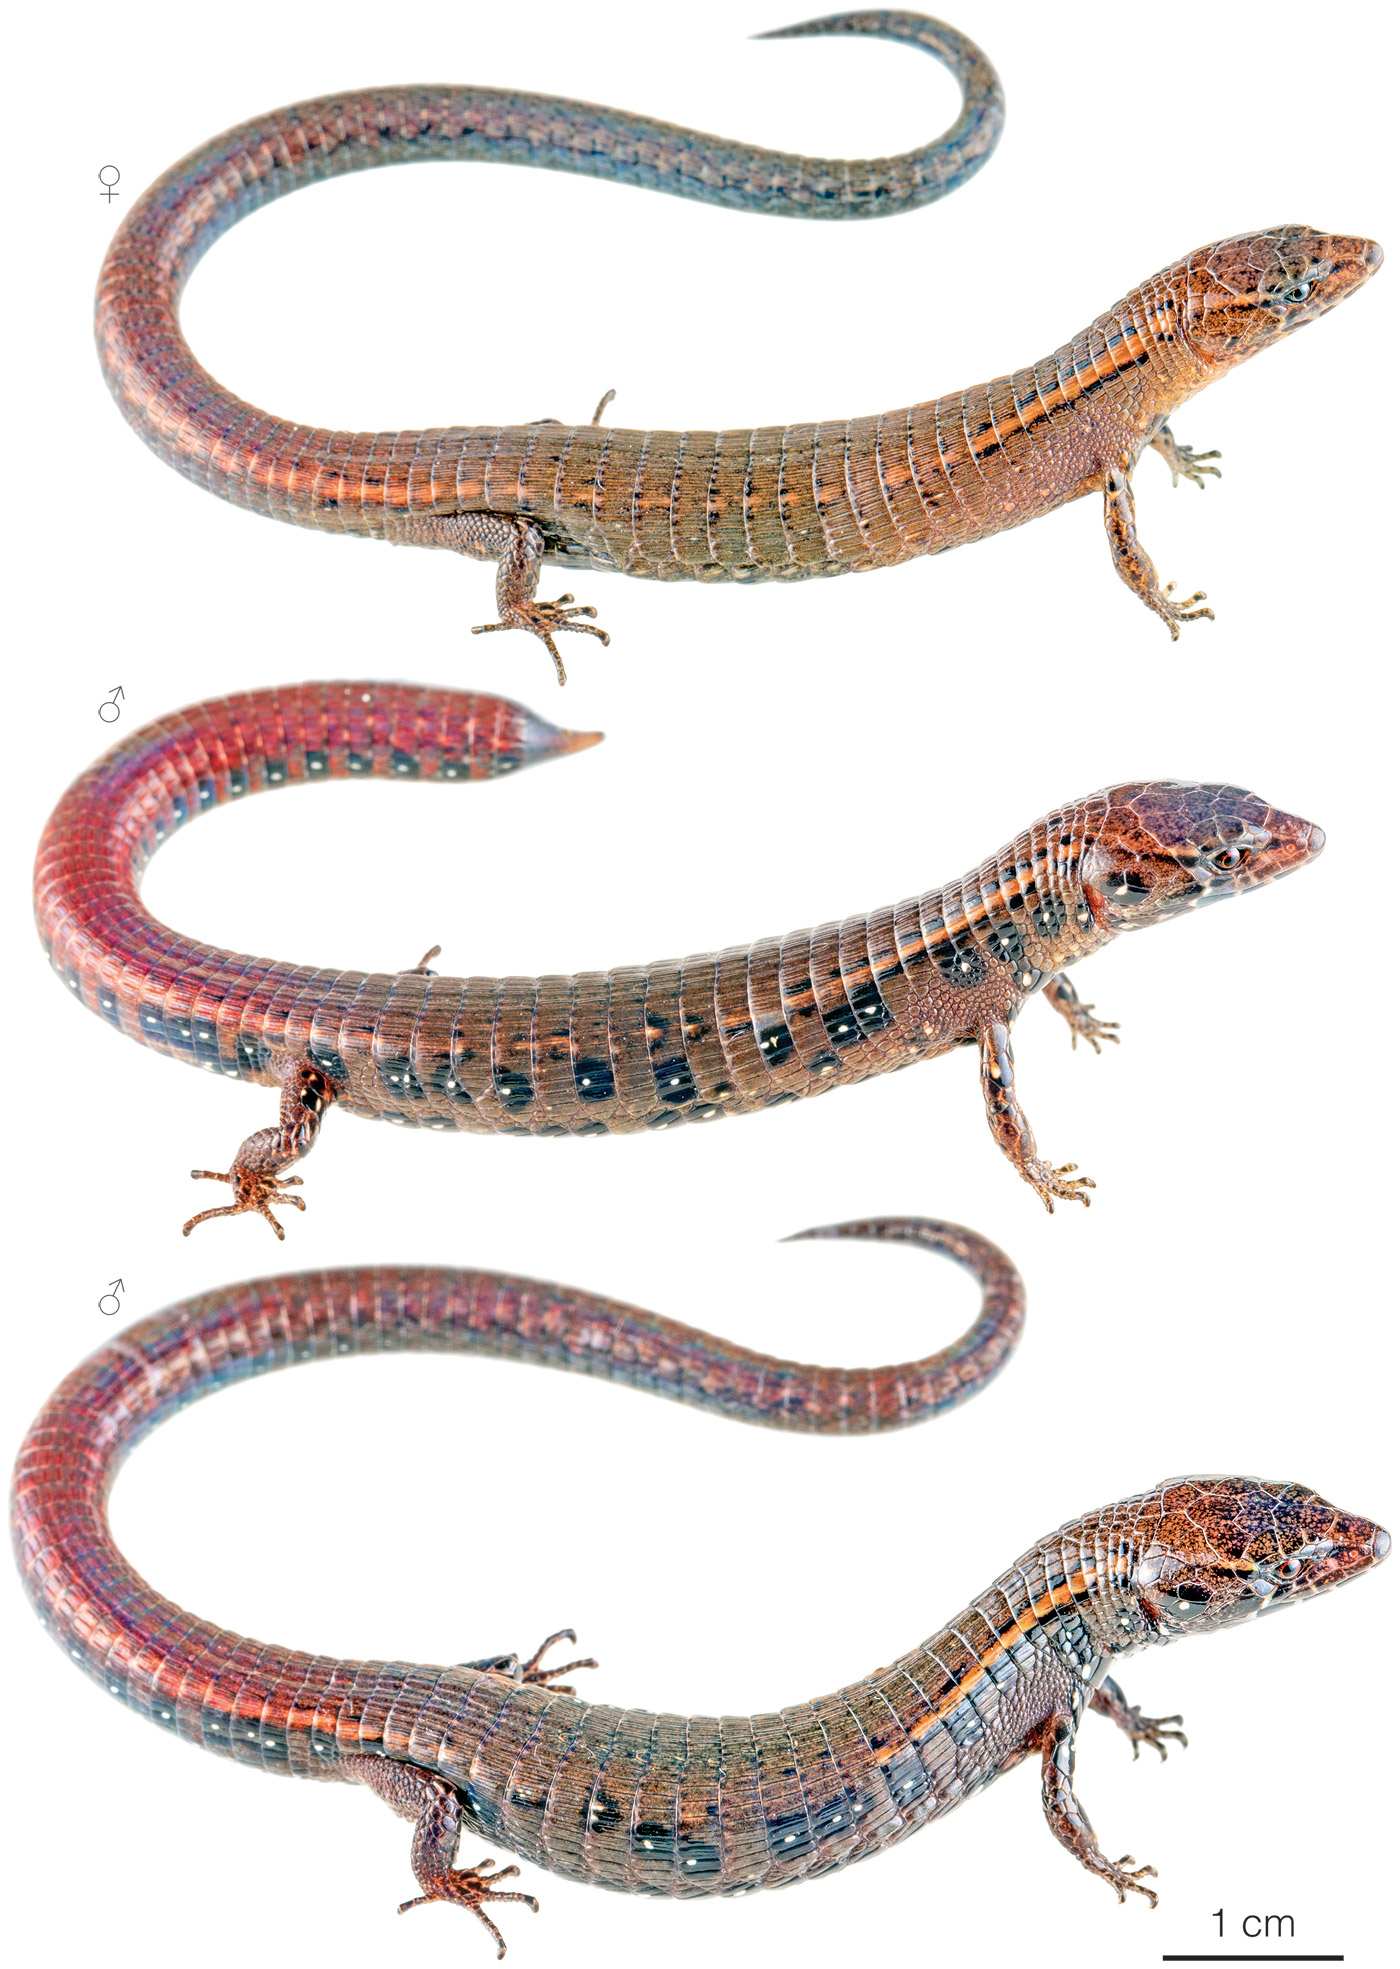 Variation among individuals of Andinosaura kiziriani